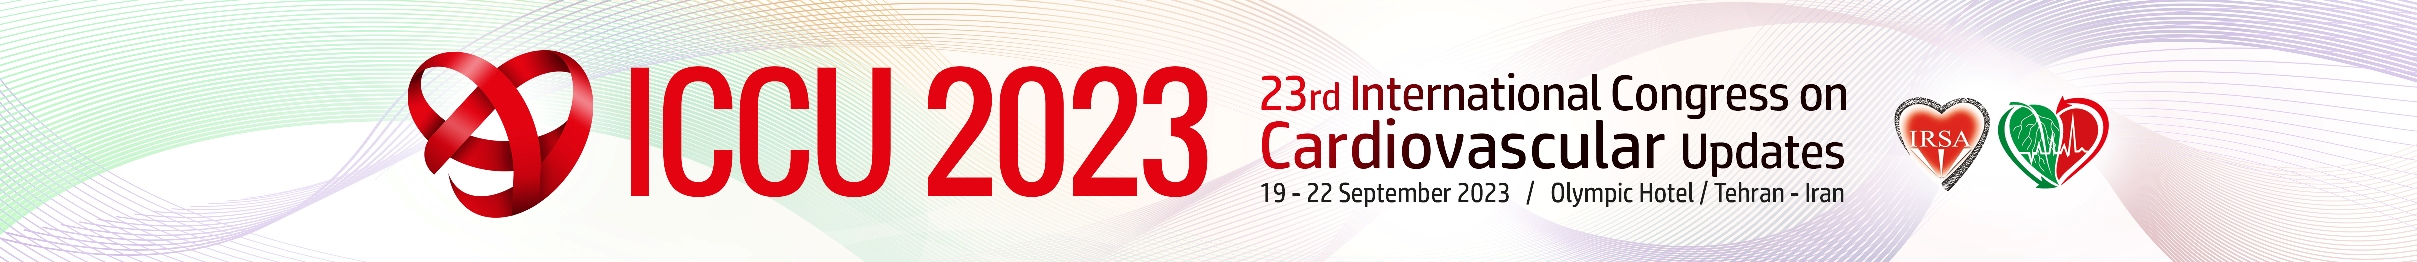 23rd International Congress on Cardiovascular Updates